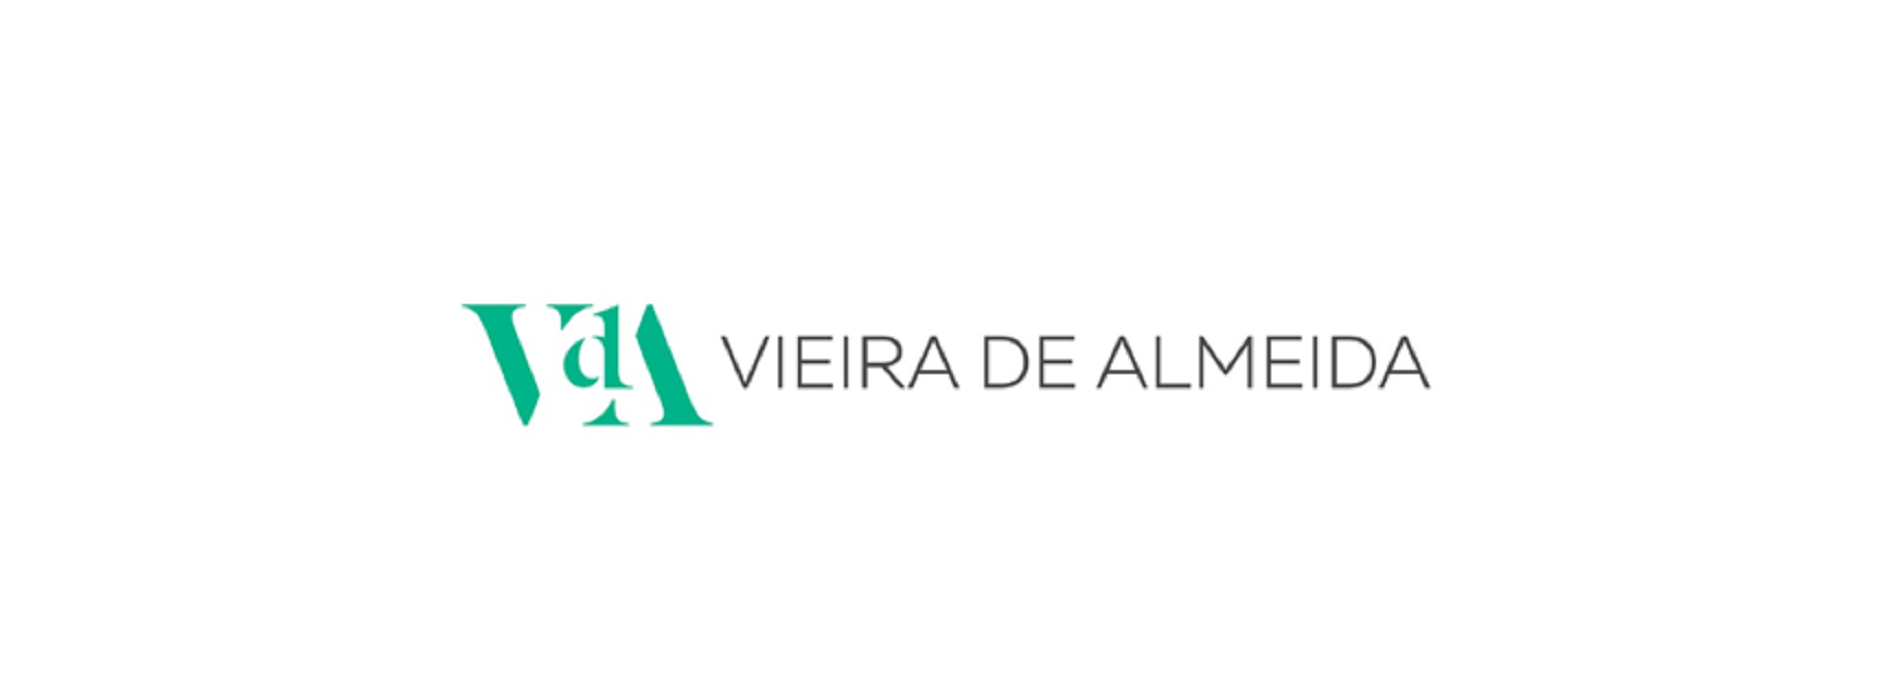 VdA – Vieira de Almeida, Sociedade de Advogados